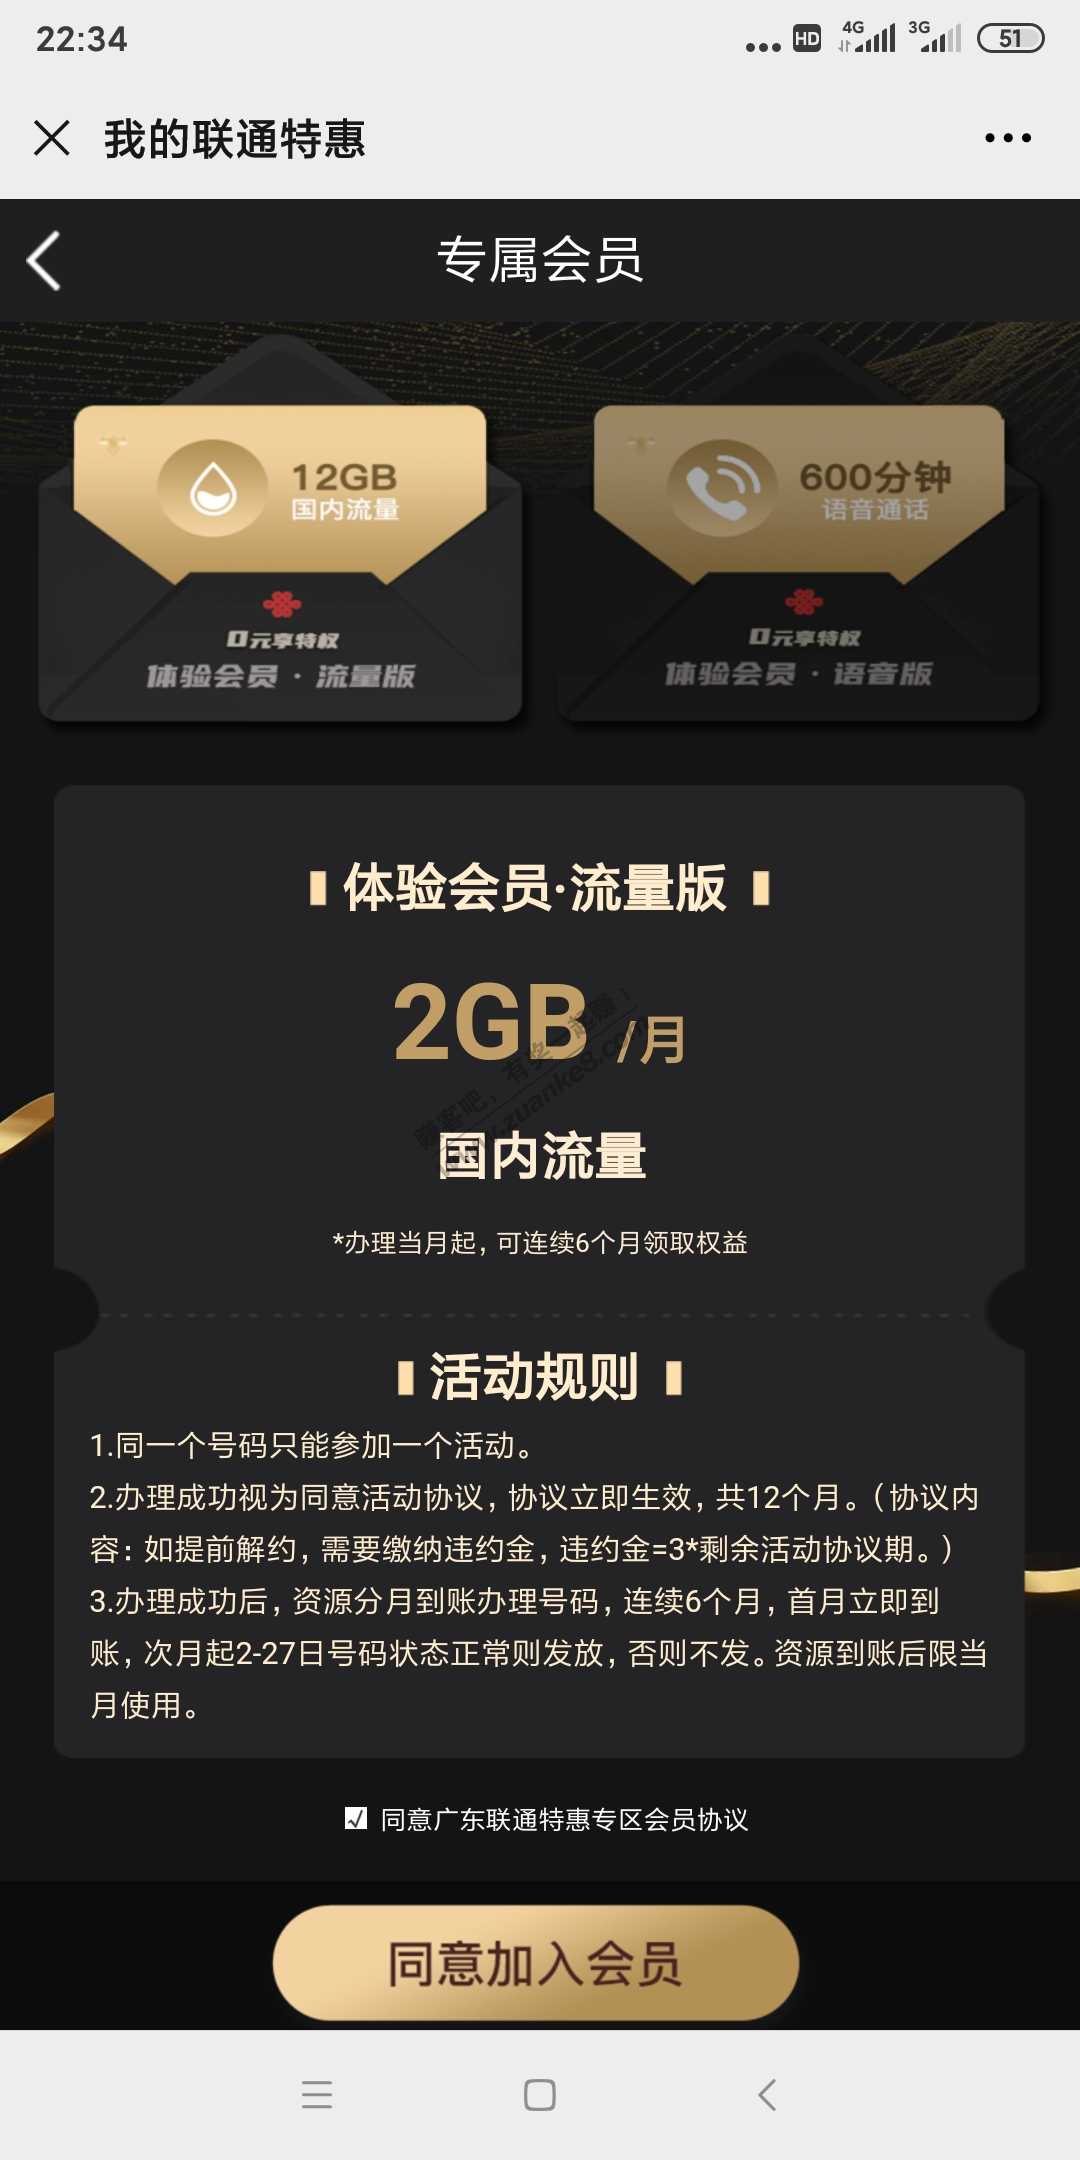 广东联通0元6个月2G流量或100分钟通话-惠小助(52huixz.com)